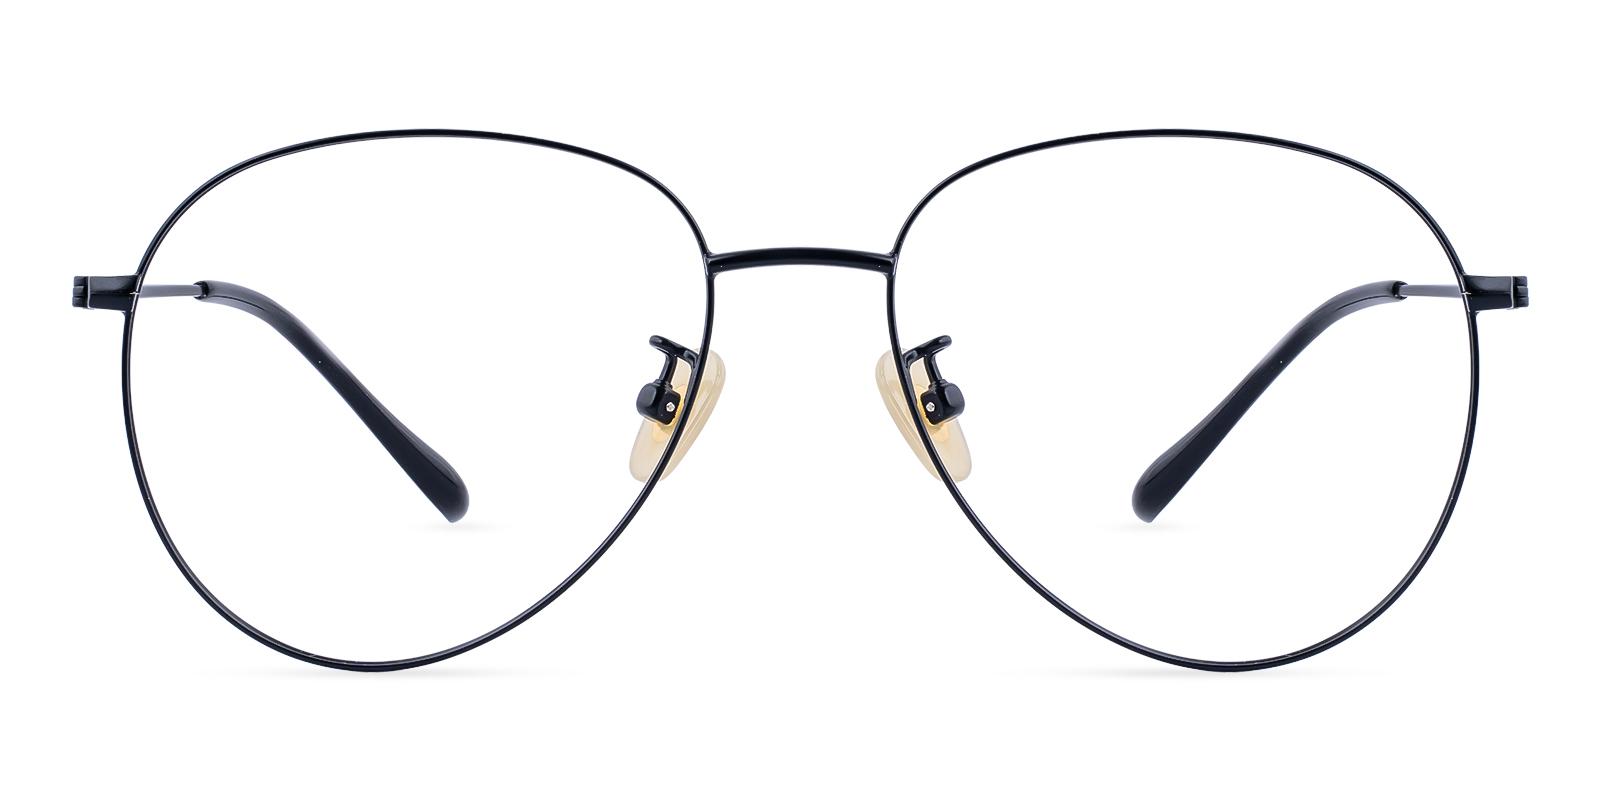 Nepal Black Titanium Eyeglasses , Lightweight , NosePads Frames from ABBE Glasses